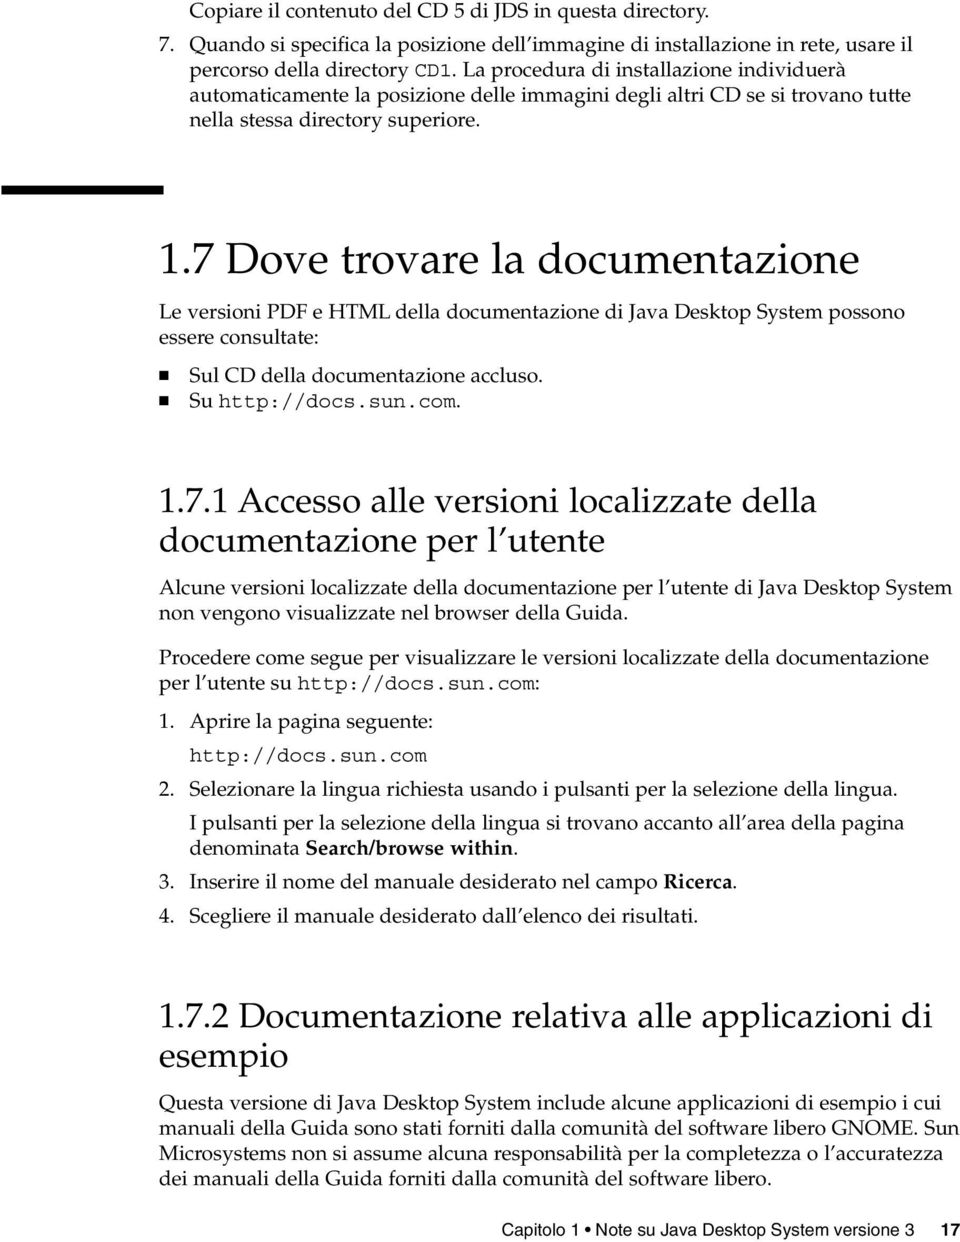 7 Dove trovare la documentazione Le versioni PDF e HTML della documentazione di Java Desktop System possono essere consultate: Sul CD della documentazione accluso. Su http://docs.sun.com. 1.7.1